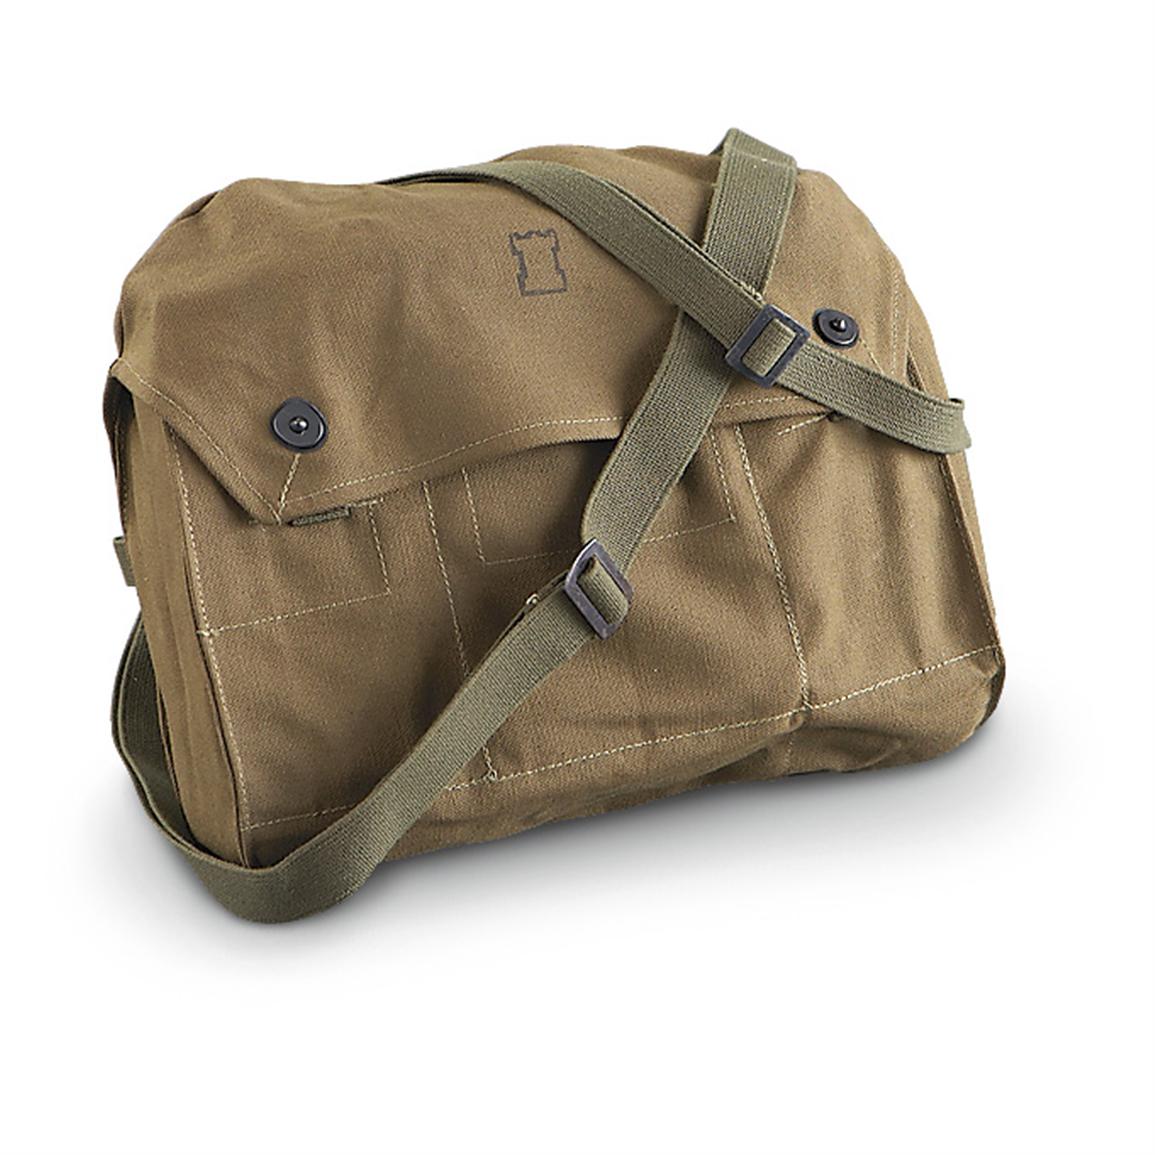 2 Used Finnish Military Shoulder Bags, Olive Drab - 220906, Shoulder ...